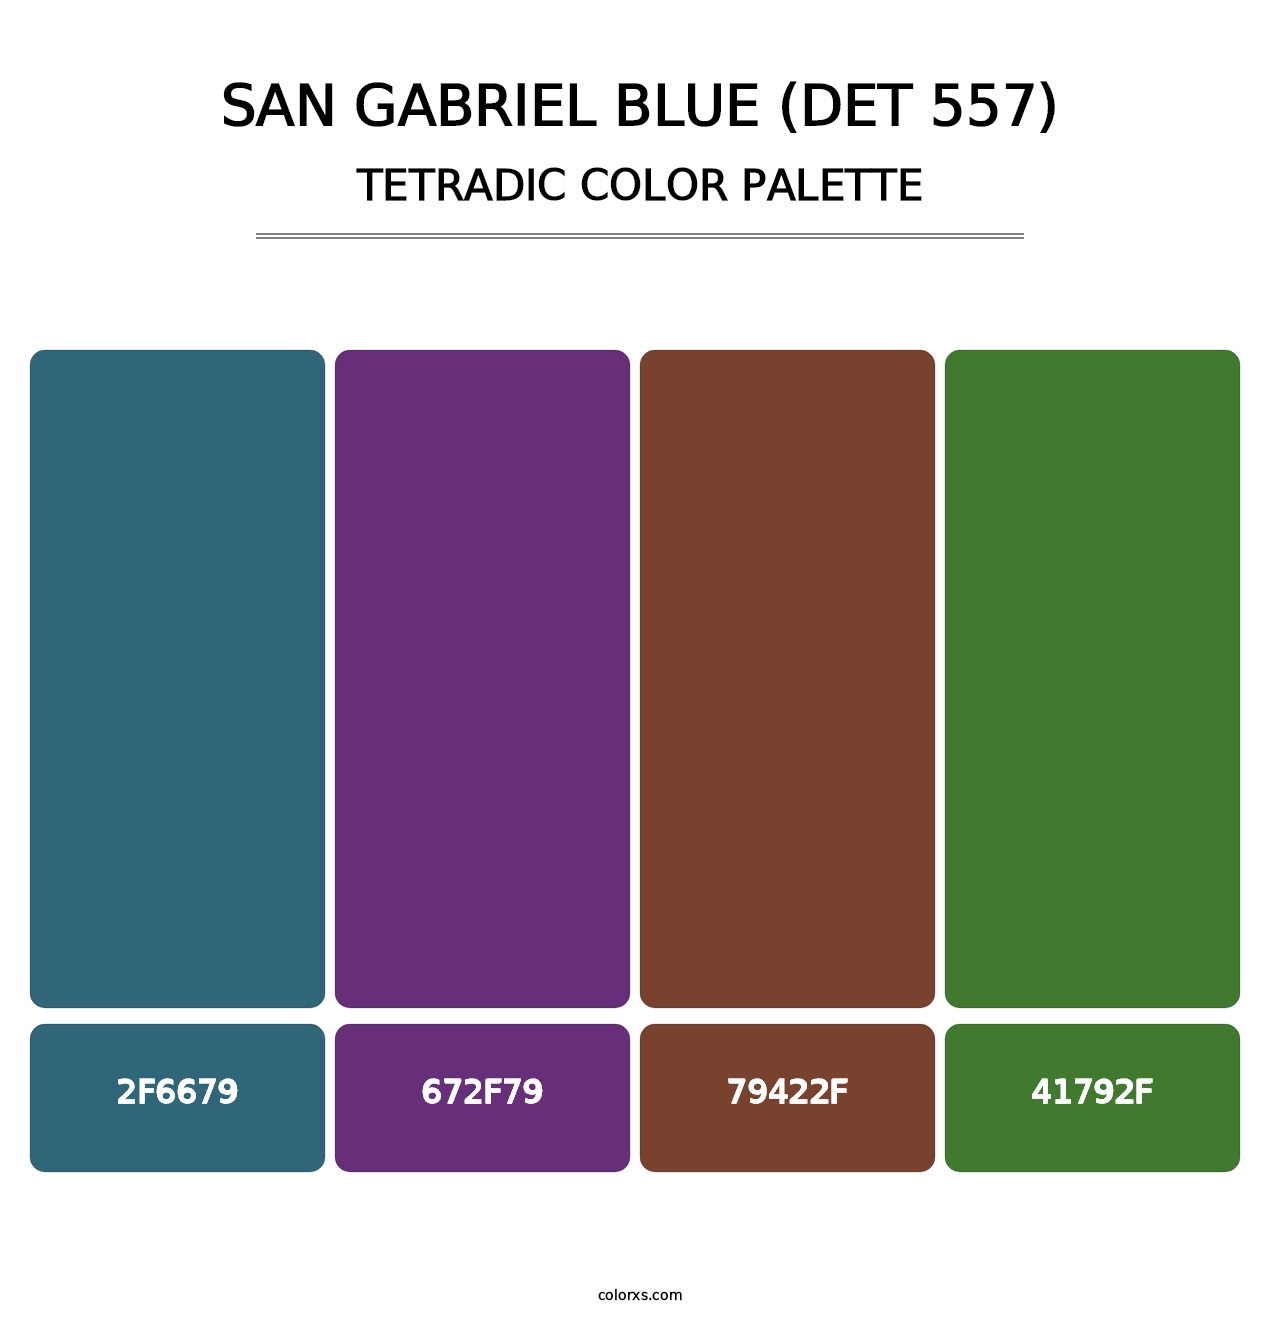 San Gabriel Blue (DET 557) - Tetradic Color Palette